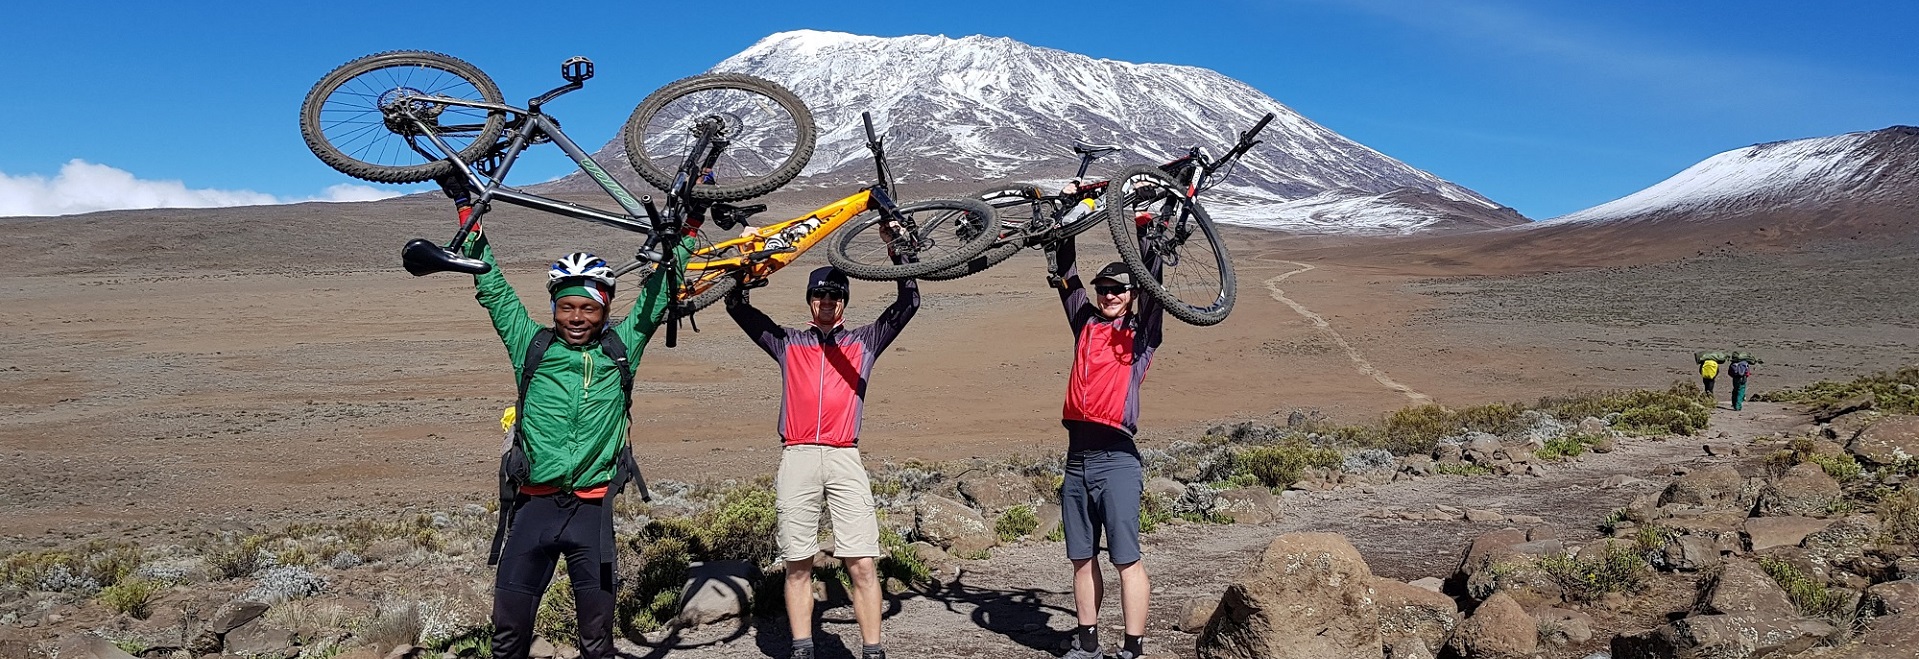 Kilimanjaro Mountain Biking Tours + 5 Days Cycling Itinerary